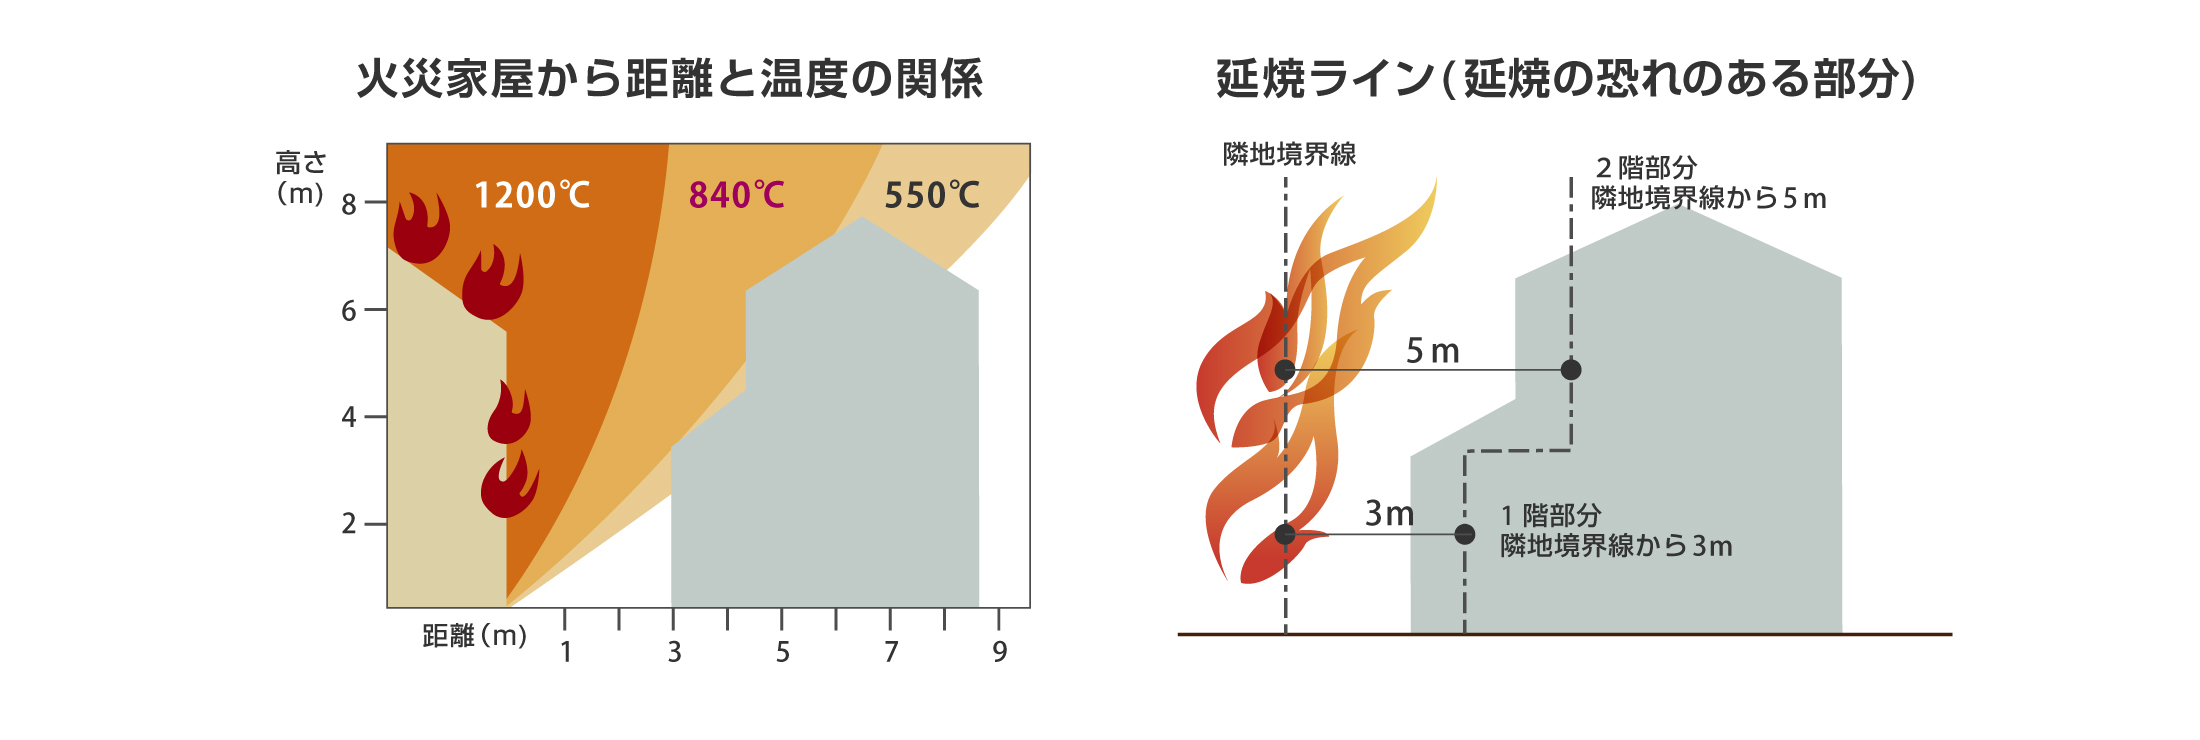 火災家屋から距離と温度の関係、延焼ラインの図